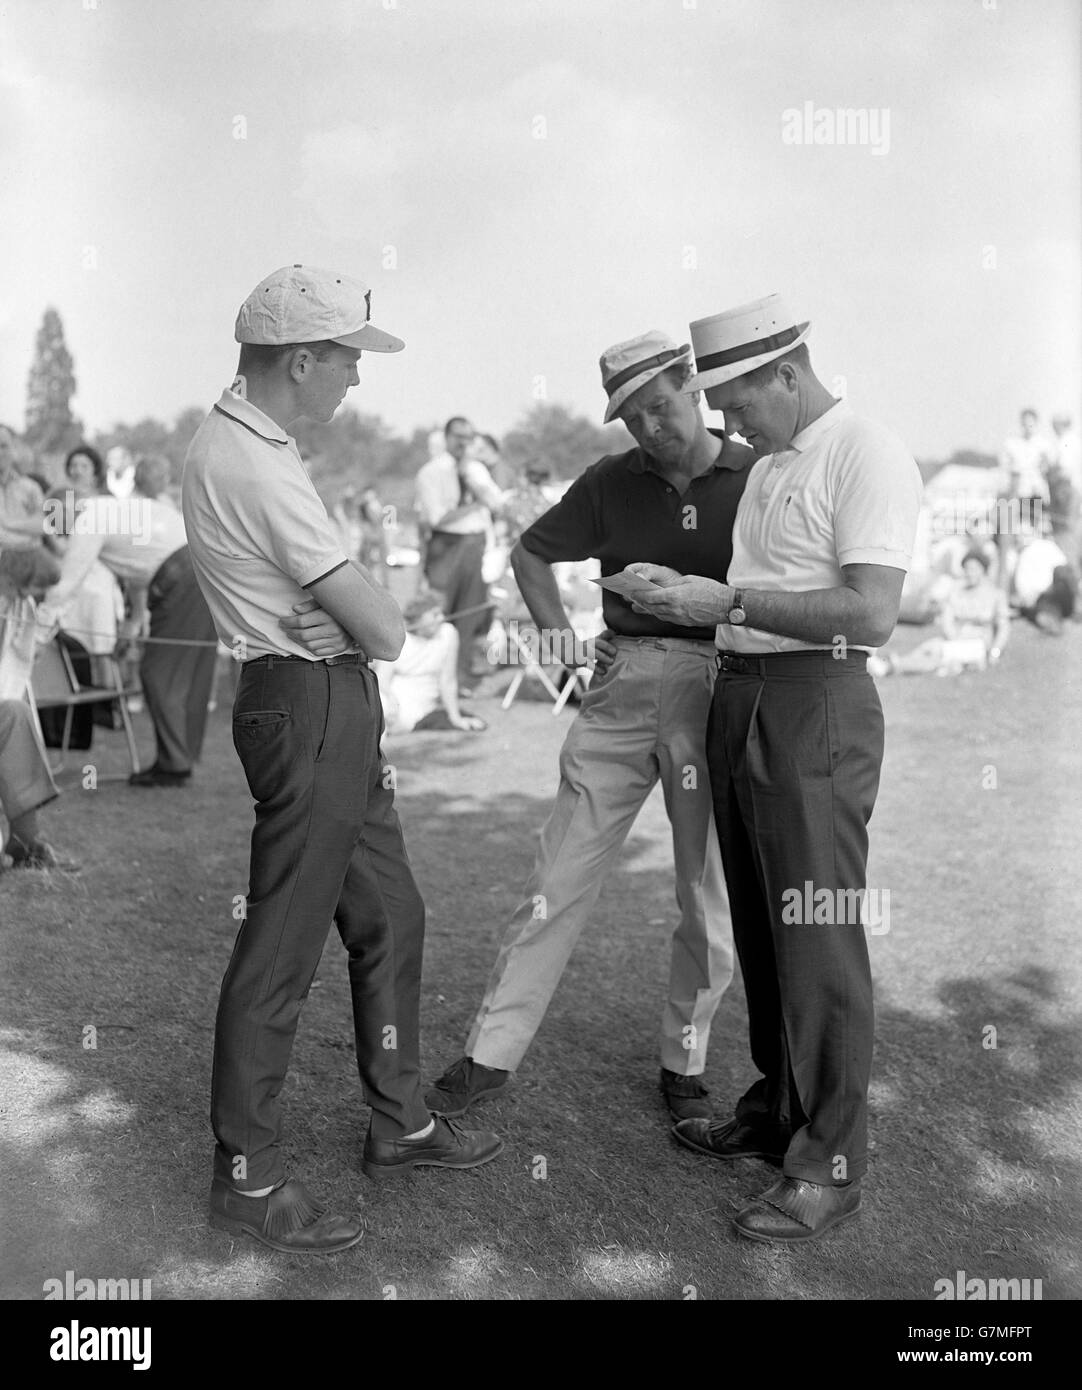 Golf - Tournoi de golf Bowmaker Pro-Am 1965 - Sunningdale.Kel Nagle, Australie, (r) vérifie sa carte de score avec ses partenaires Bobby Cole (l) et Brian Park, joueur sud-africain de 17 ans. Banque D'Images